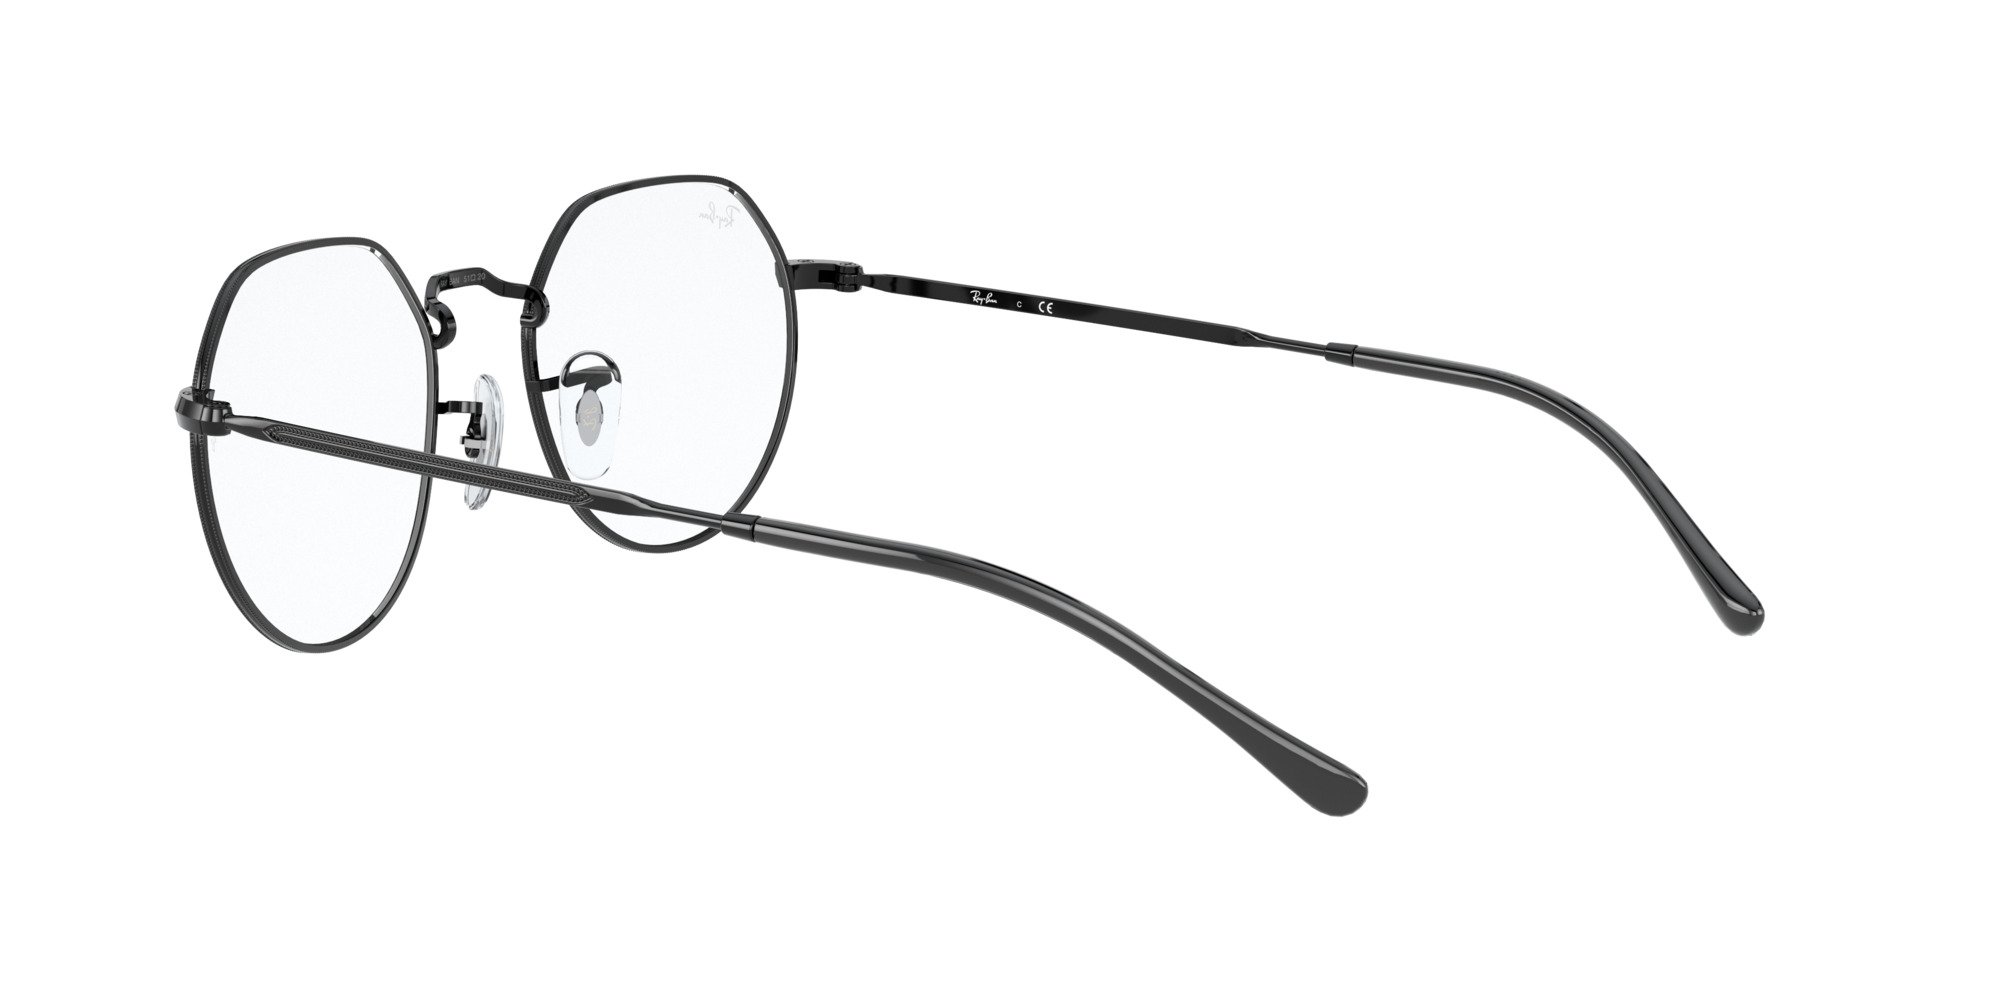 Das Bild zeigt die Korrektionsbrille RX6564 2509 von der Marke Ray Ban in Schwarz.